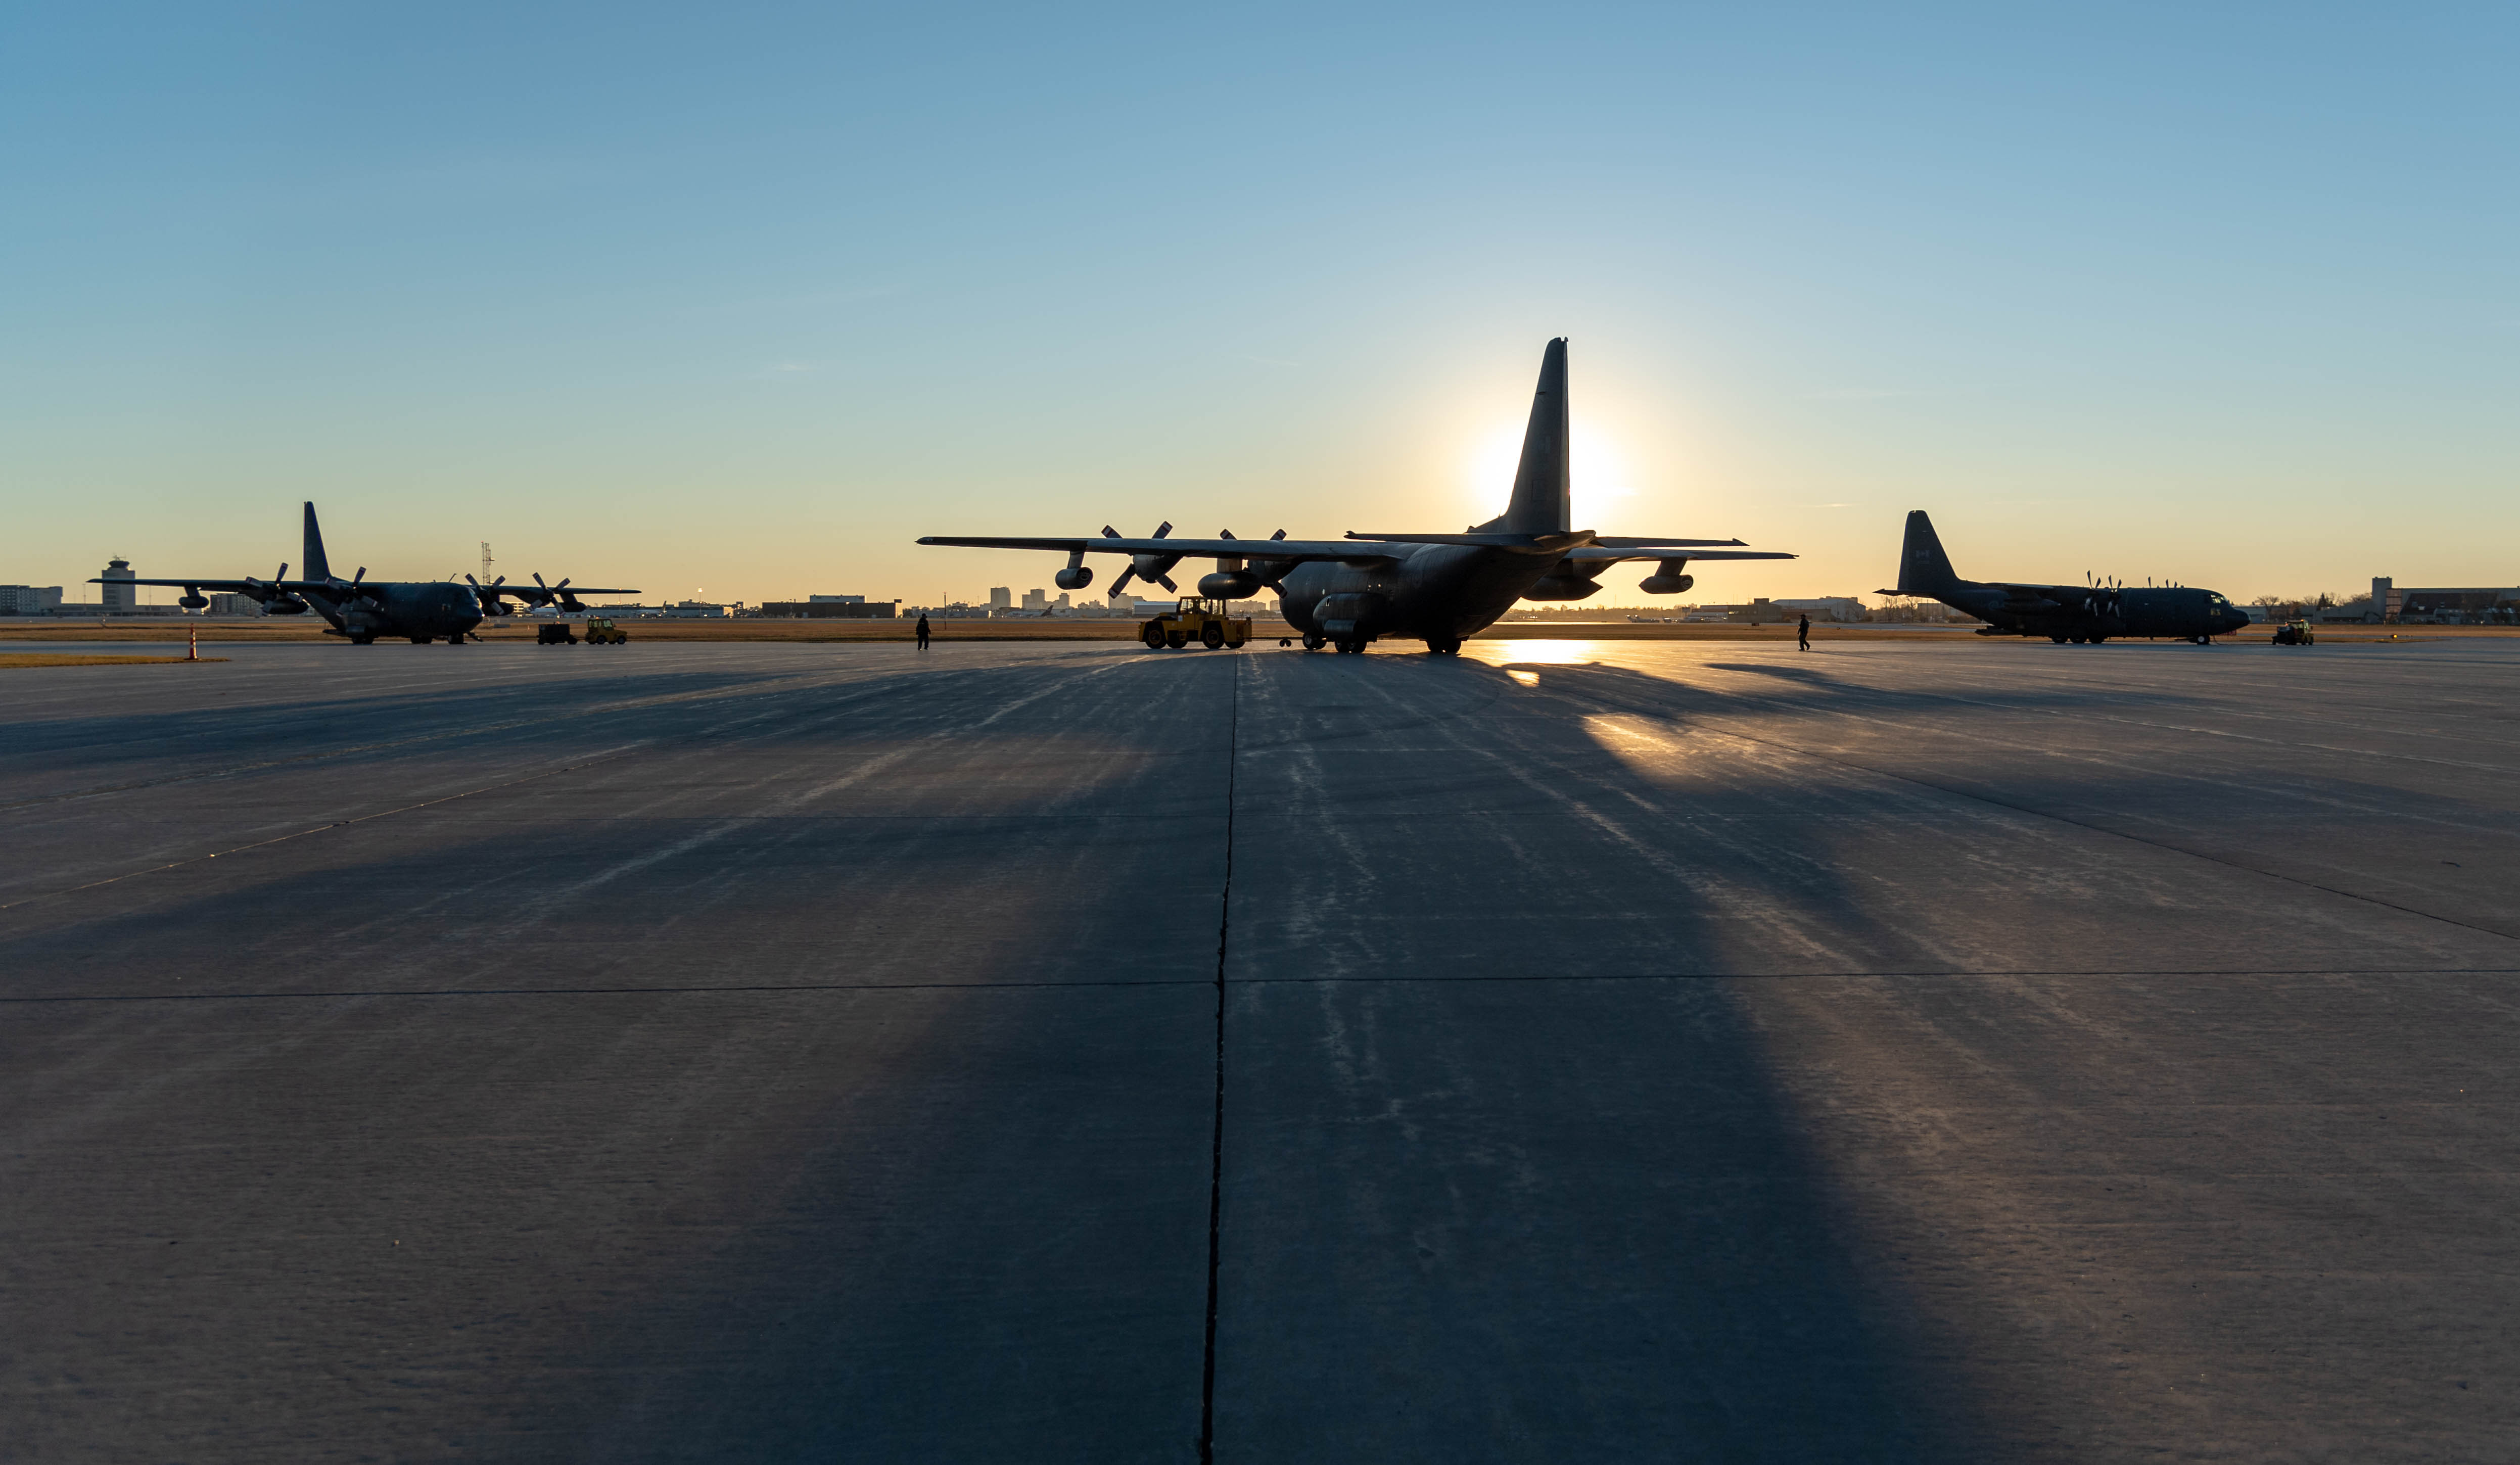 Des avions CC-130 Hercules se trouvent sur la piste à la 17e Escadre Winnipeg, au Manitoba, à l’aube, le 13 octobre 2020 avant de décoller afin de survoler Winnipeg pour marquer la 60e année de service de l’aéronef dans l’Aviation royale canadienne. PHOTO : Caporal Darryl Hepner